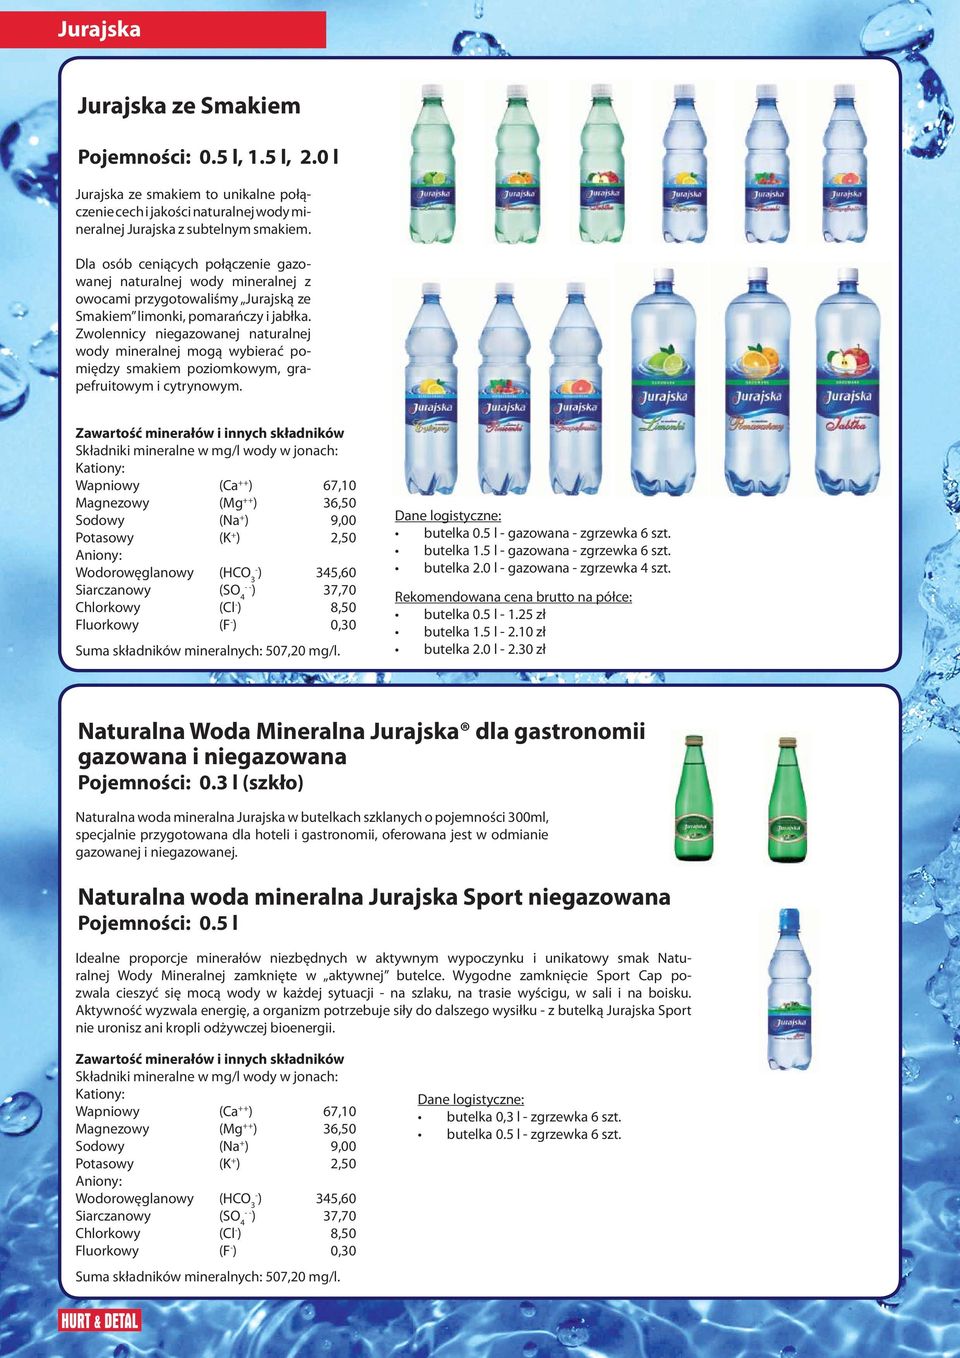 Zwolennicy niegazowanej naturalnej wody mineralnej mogą wybierać pomiędzy smakiem poziomkowym, grapefruitowym i cytrynowym.